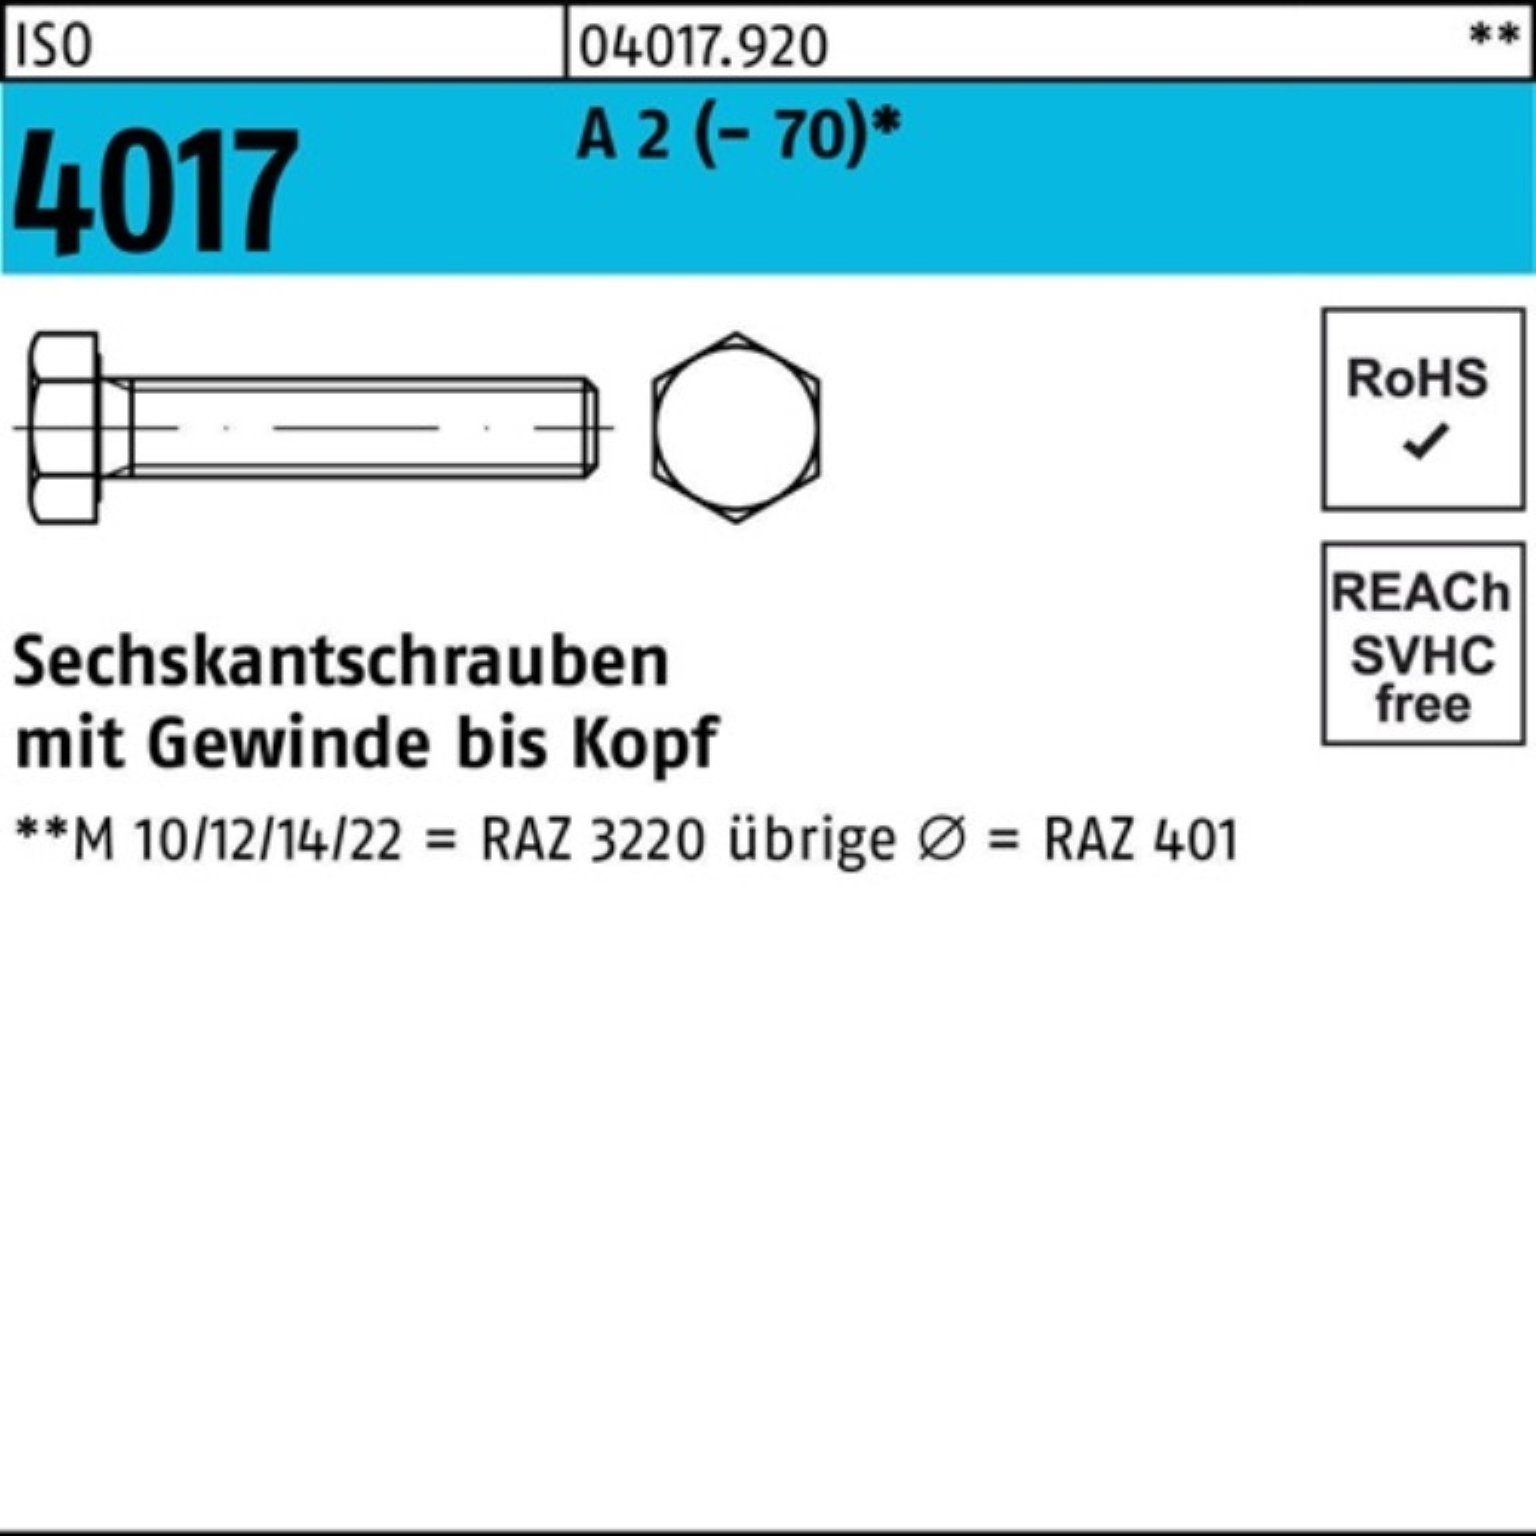 Bufab Sechskantschraube 100er Pack Sechskantschraube ISO 4017 VG M8x 140 A 2 (70) 50 Stück